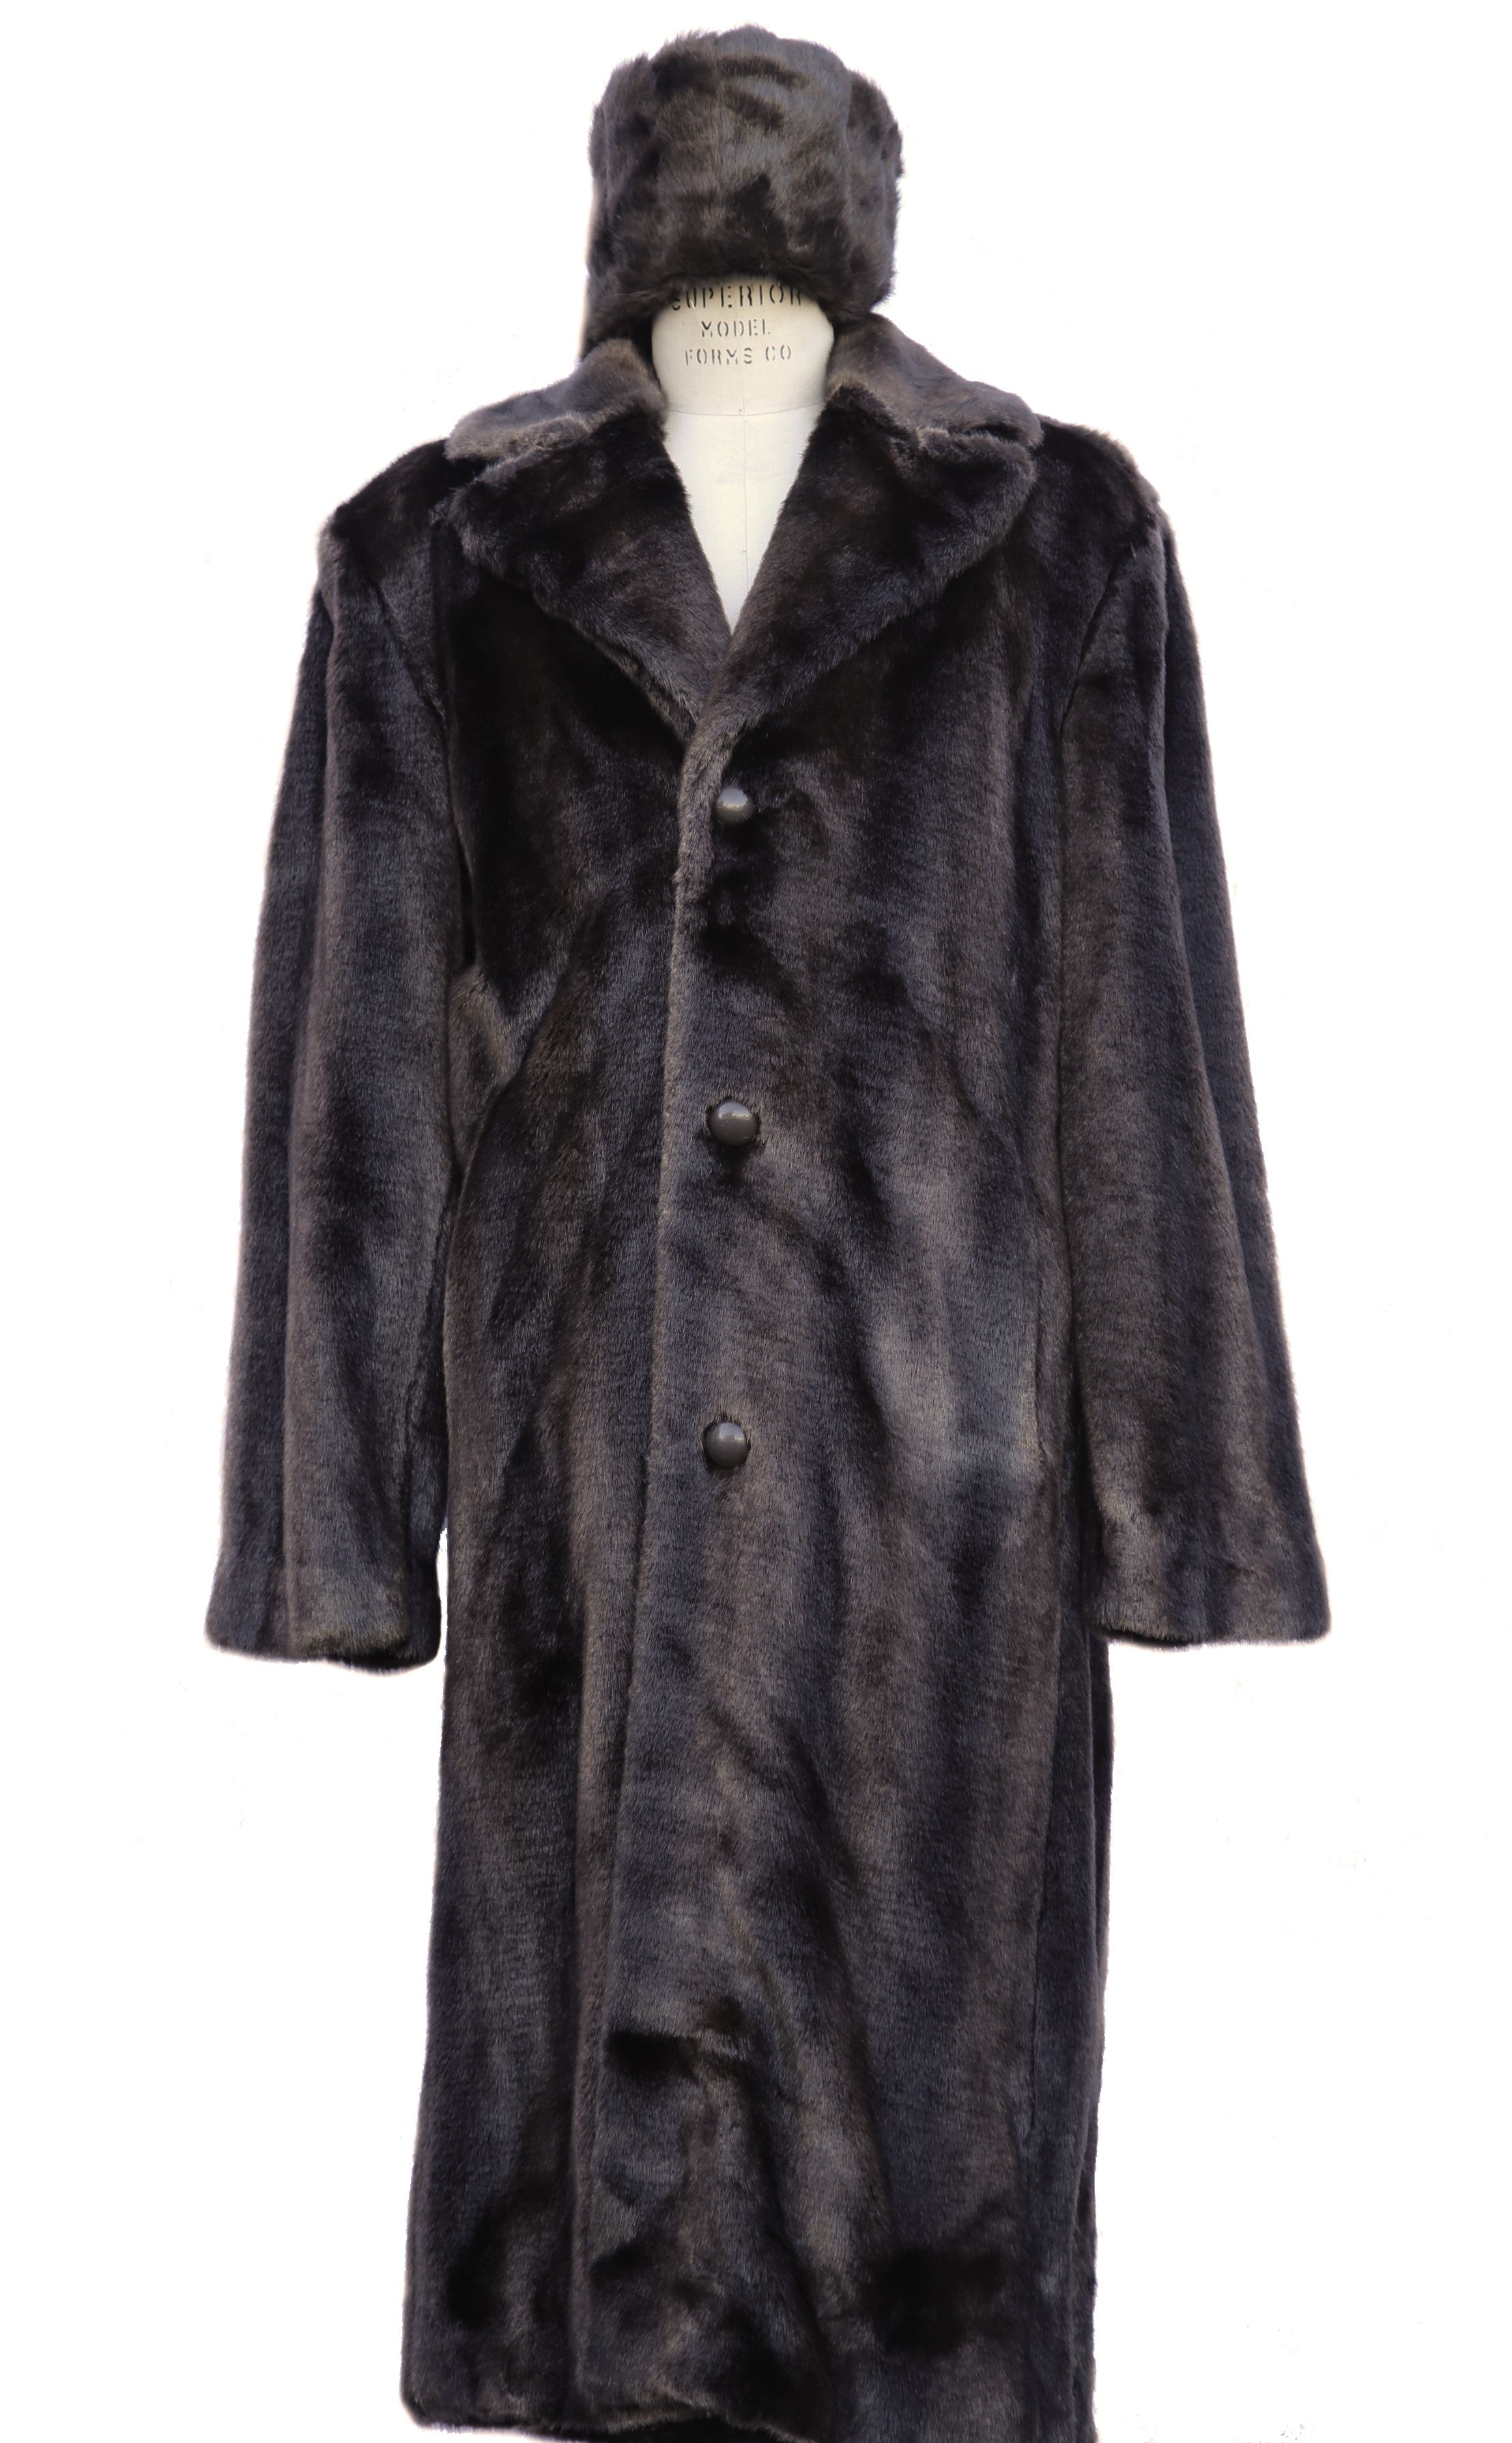 WINTER SPECIAL: FREE FUR HAT + Faux Bear Pelt Fur Coat Buttoned 1pc Long Zoot Suit - Brown